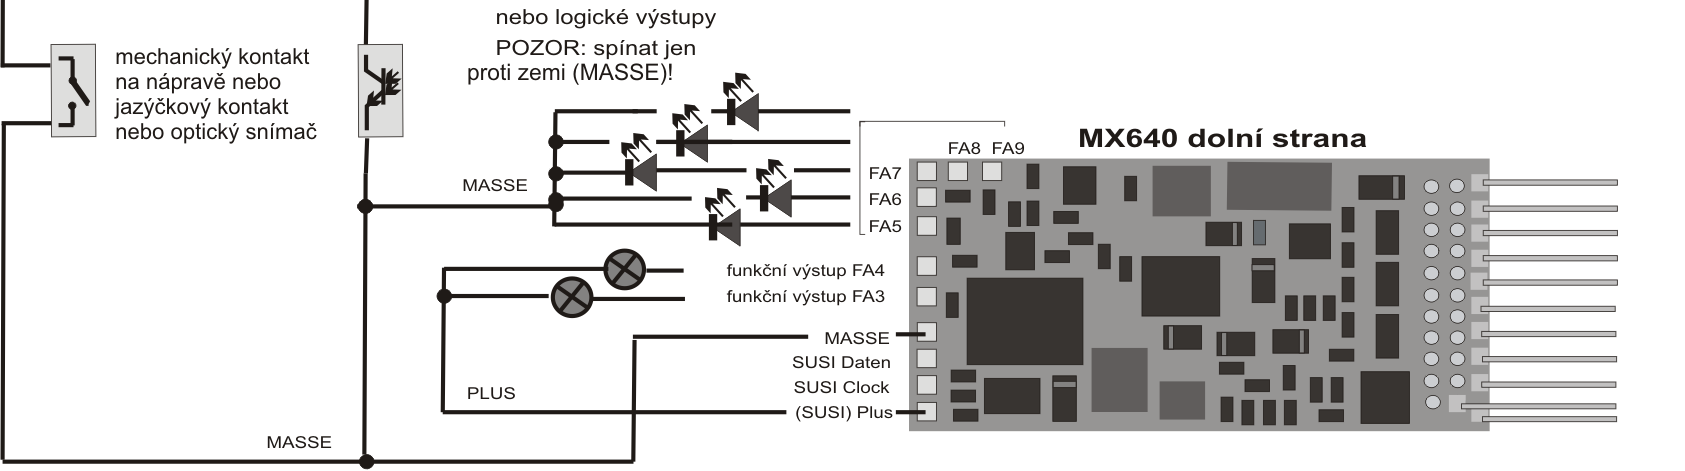 DekodérMX62, MX63, MX64D, zvukový dekodér MX64 strana 47 MX64 celkové schéma zapojení a opatření pro ZVUK Připojení reproduktoru, detektoru nápravy: Aby mohl být MX64 provozován jako zvukový dekodér,